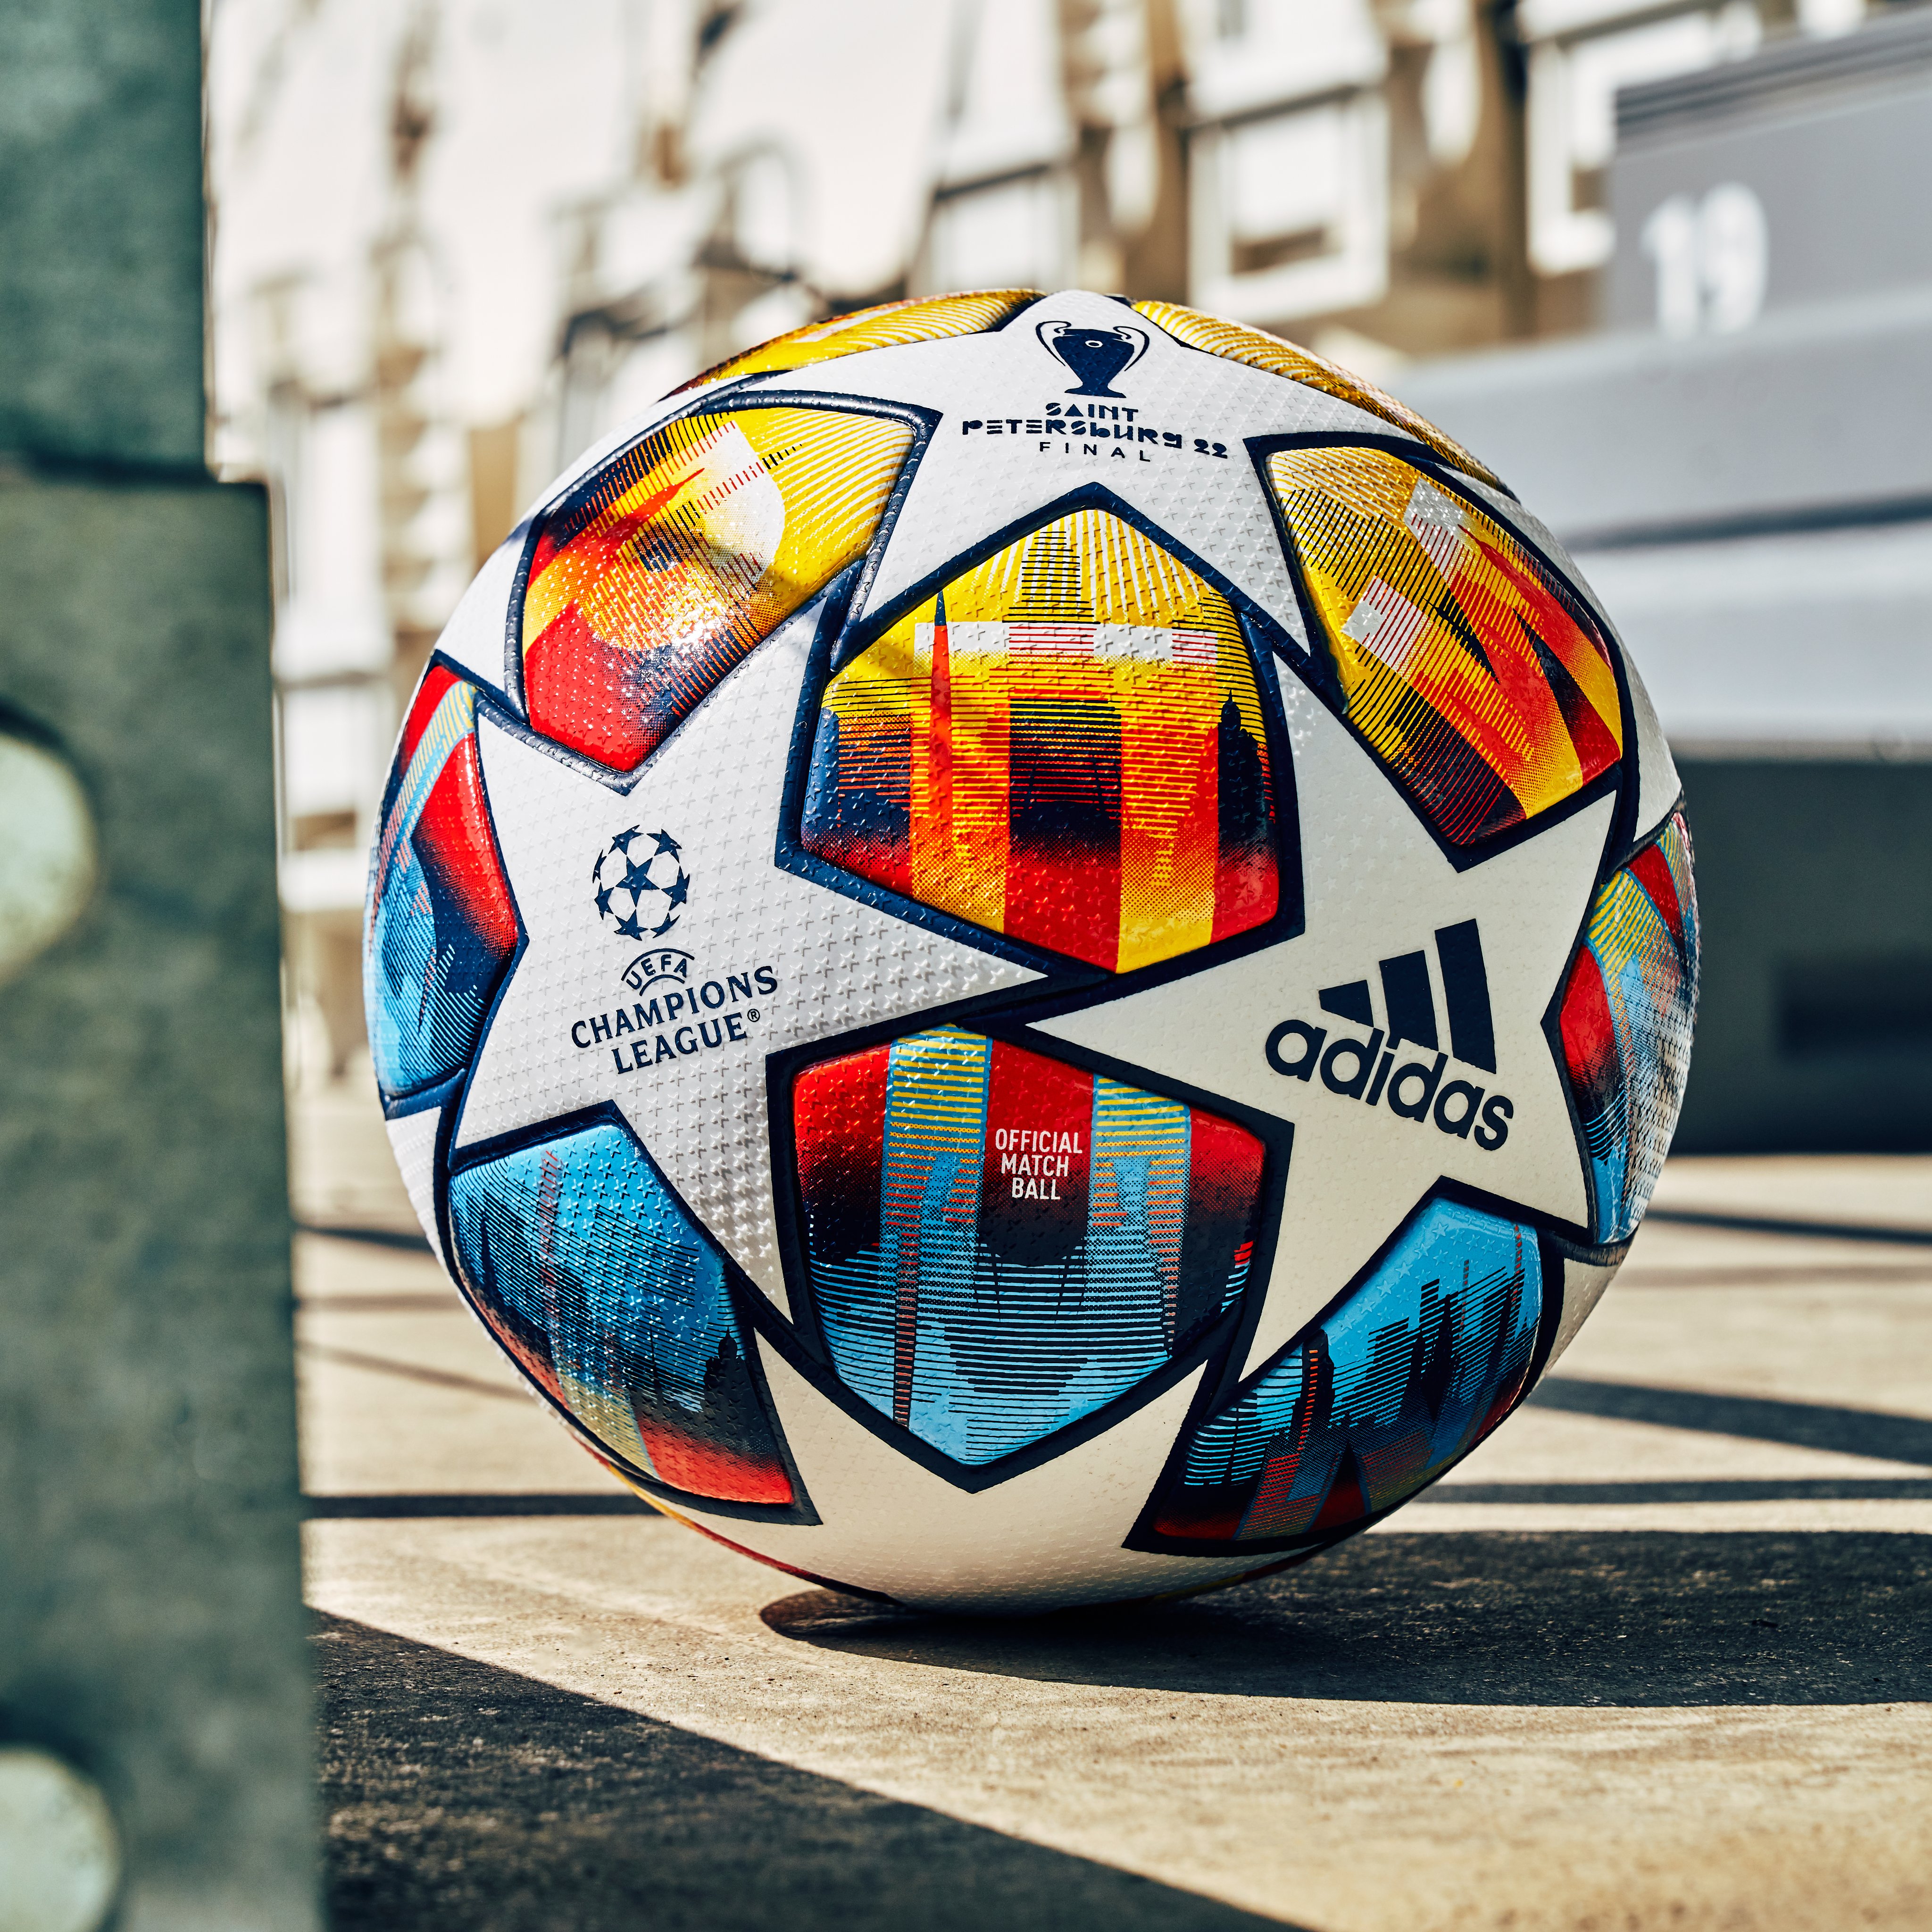 Euro 2024 : L'UEFA présente un ballon connecté, nouvel « assistant